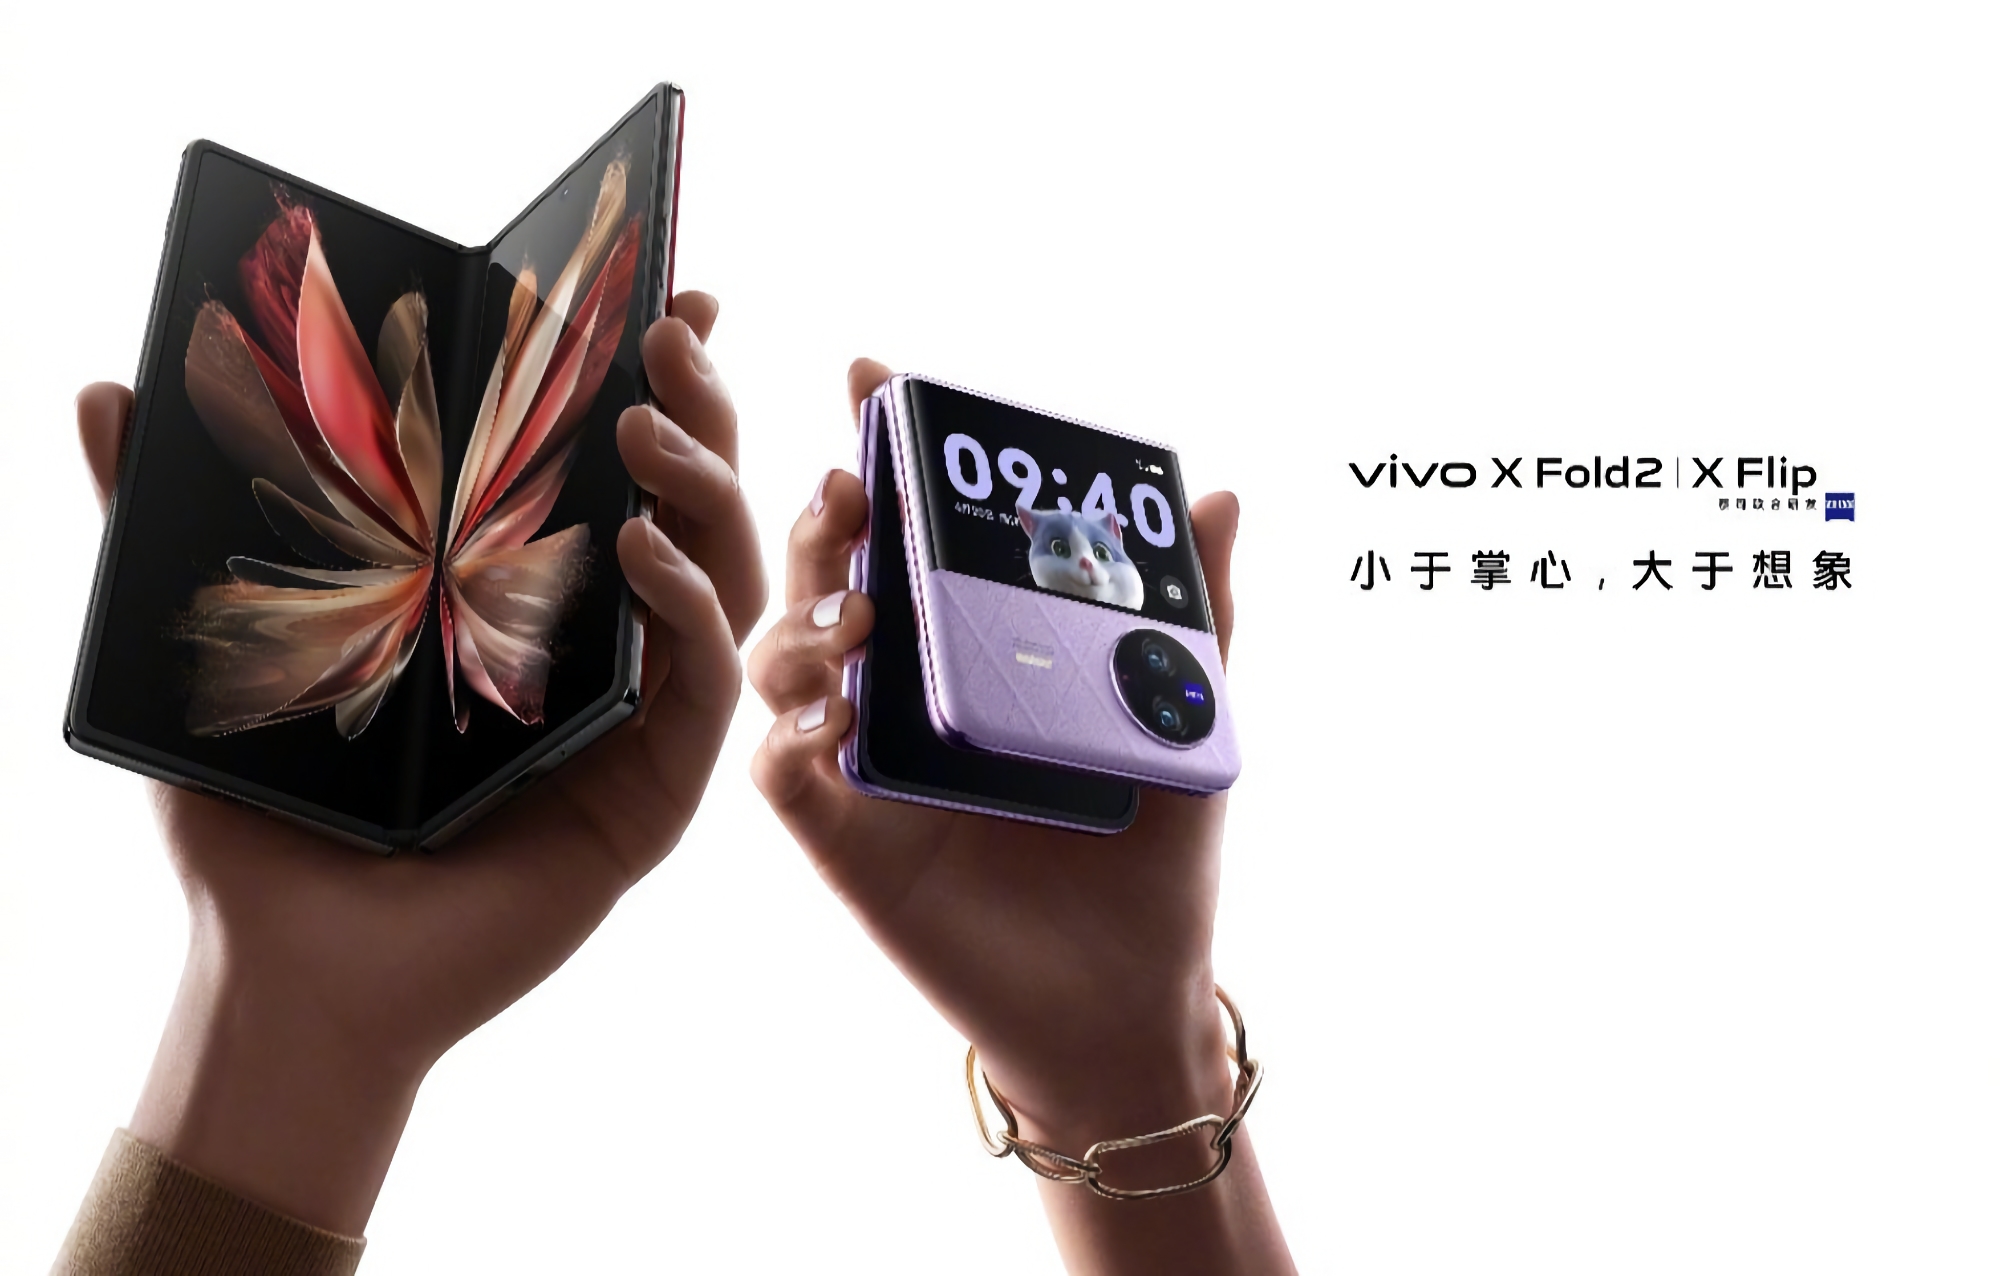 Es ist offiziell: Das vivo X Fold 2 und das vivo X Flip faltbare Smartphone werden am 20. April auf den Markt kommen